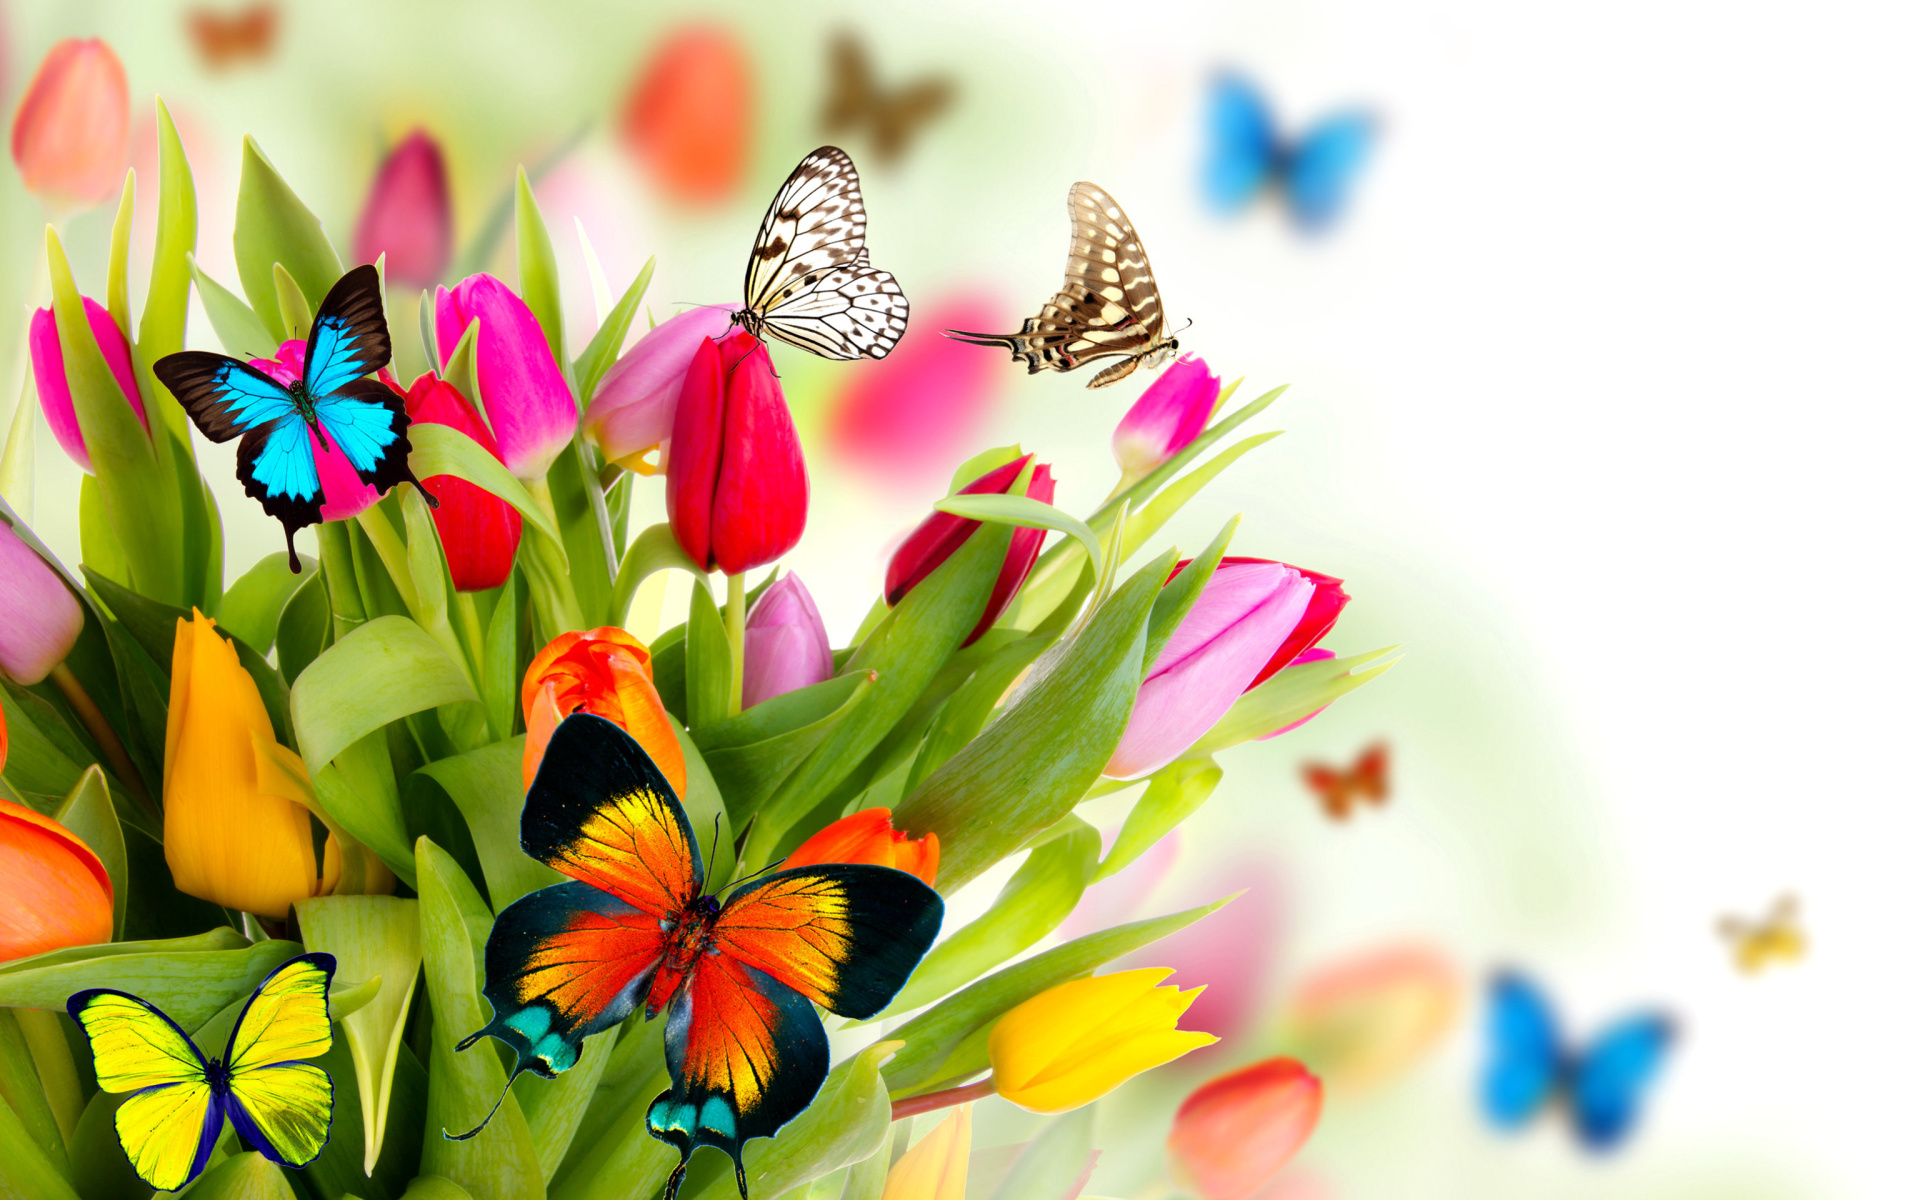 Скачать обои бесплатно Цветок, Цвета, Бабочка, Красочный, Весна, Тюльпан, Художественные картинка на рабочий стол ПК